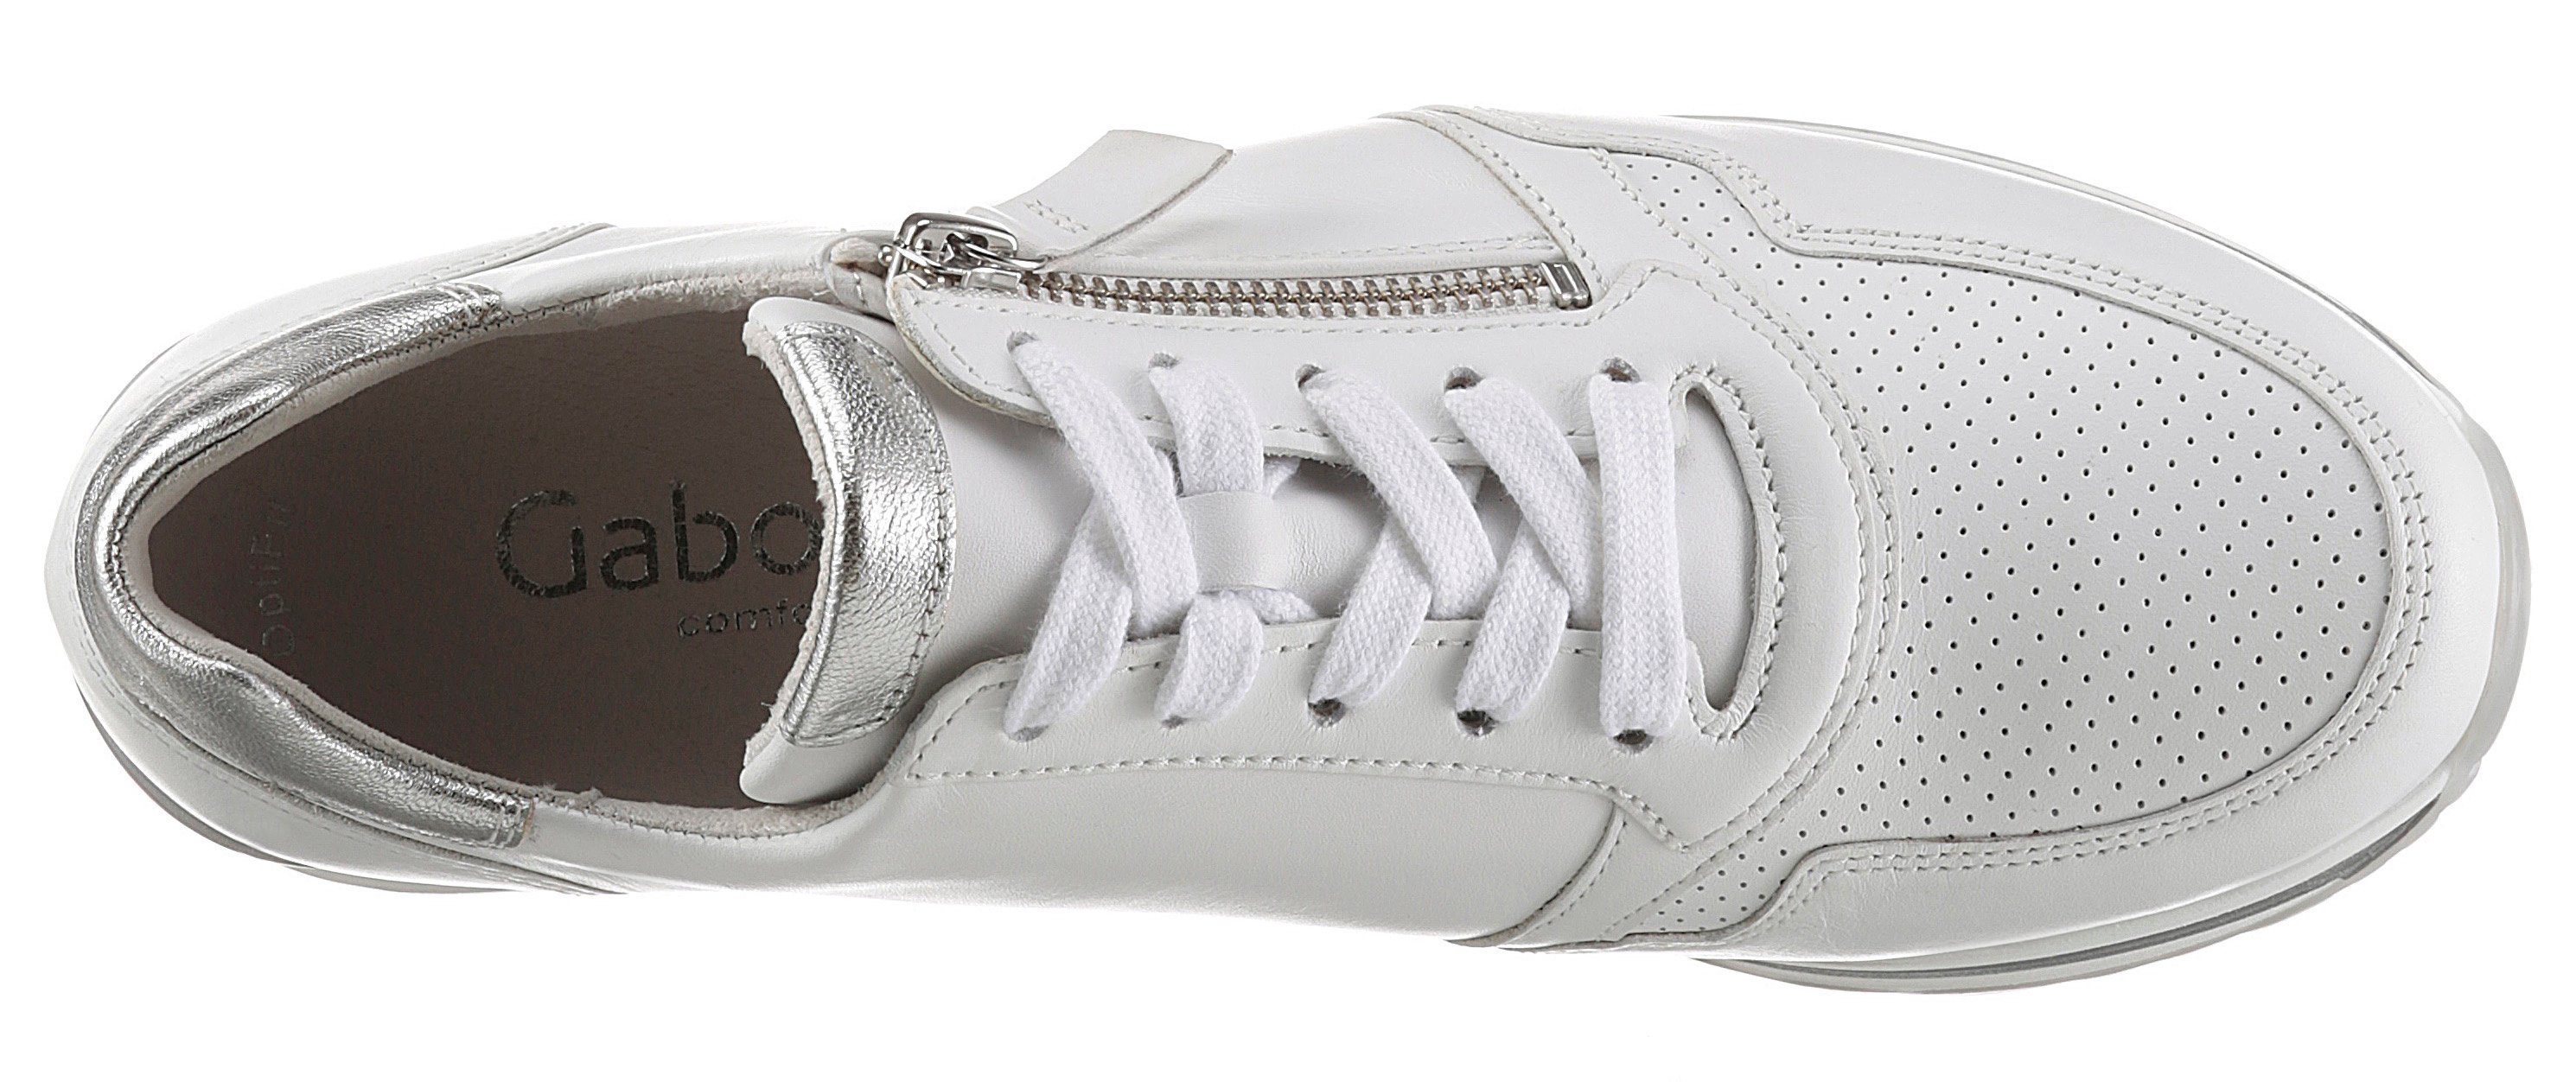 Gabor silberfarbenen Keilsneaker Details mit TURIN